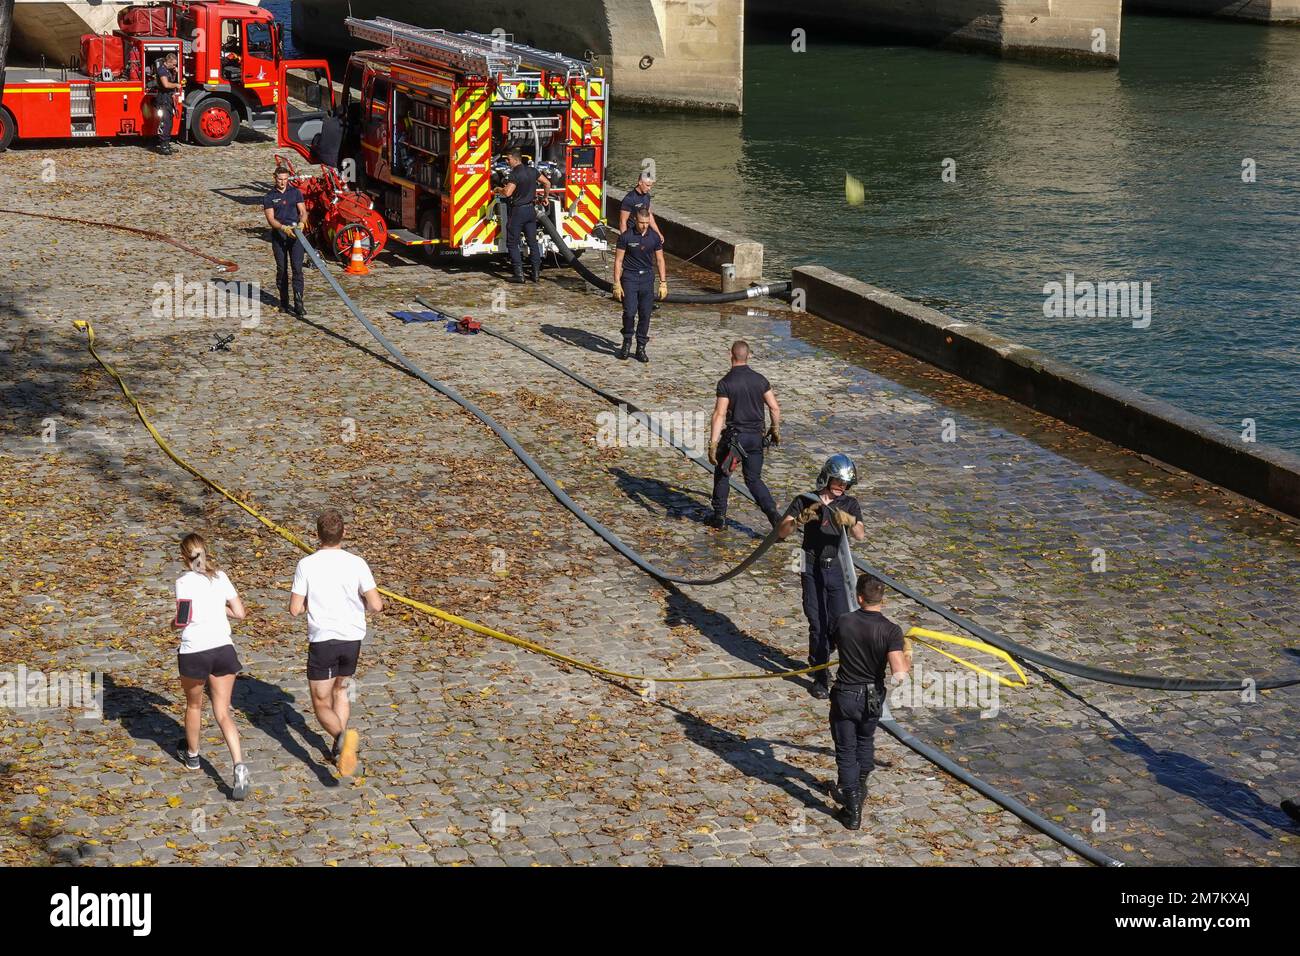 Francia, París, Un escuadrón de bomberos entrenando en la orilla del río Sena Foto © Fabio Mazzarella/Sintesi/Alamy Foto de archivo Foto de stock